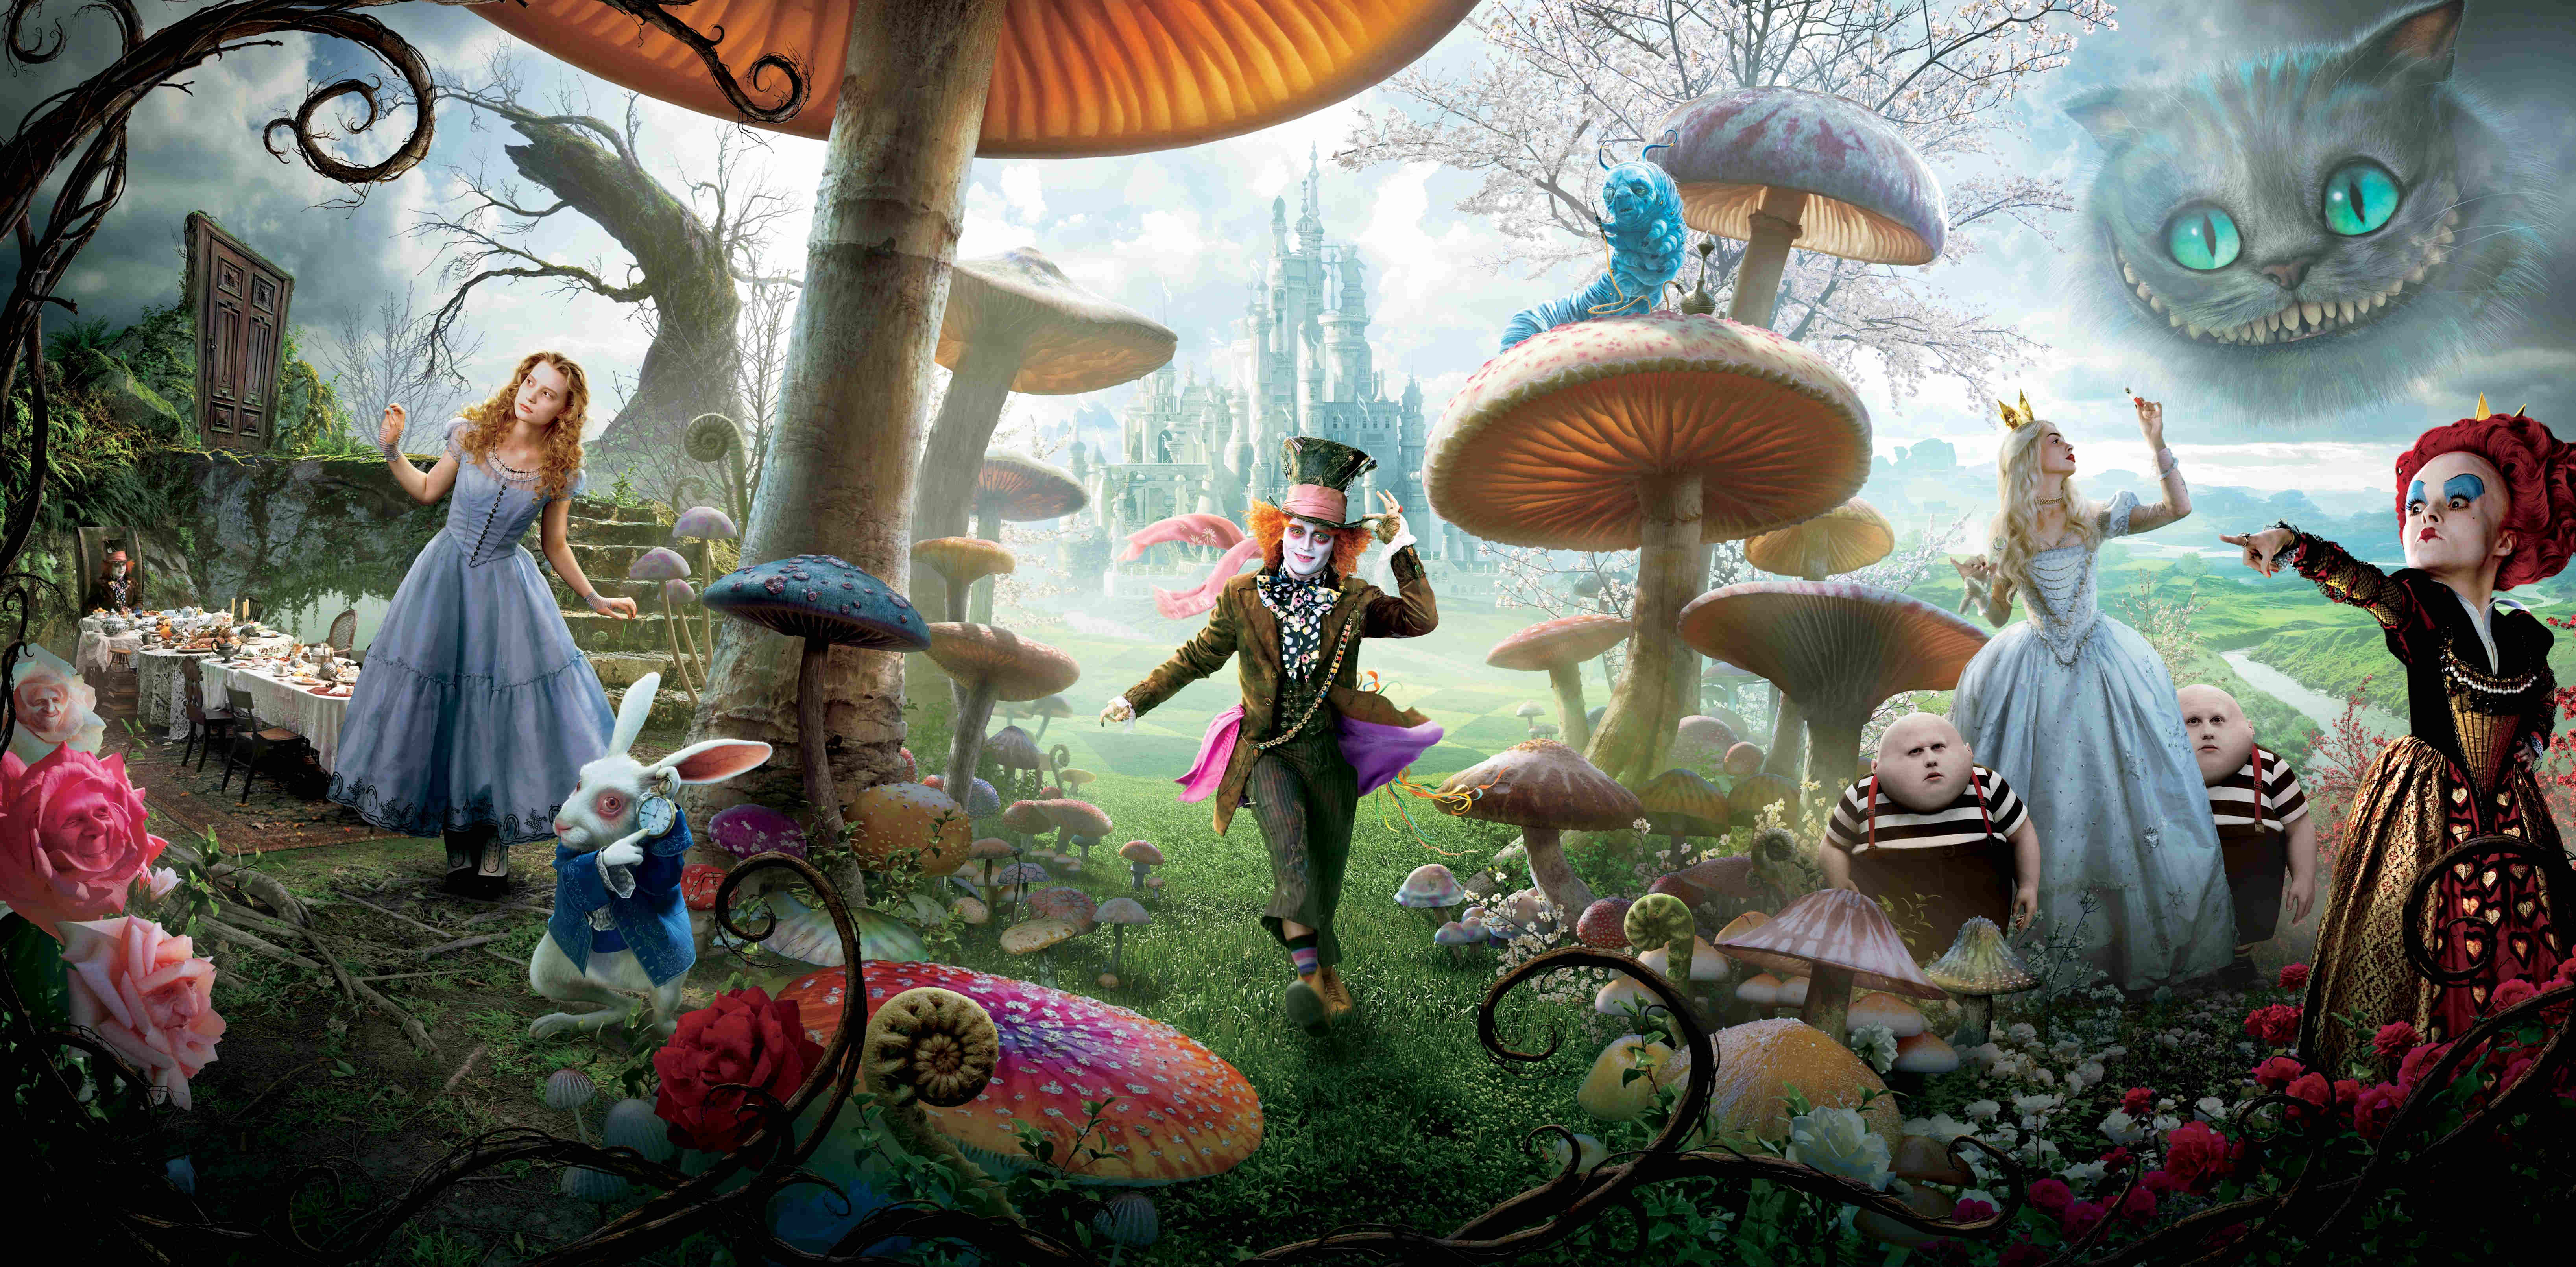 Wonderland from Alice in Wonderland